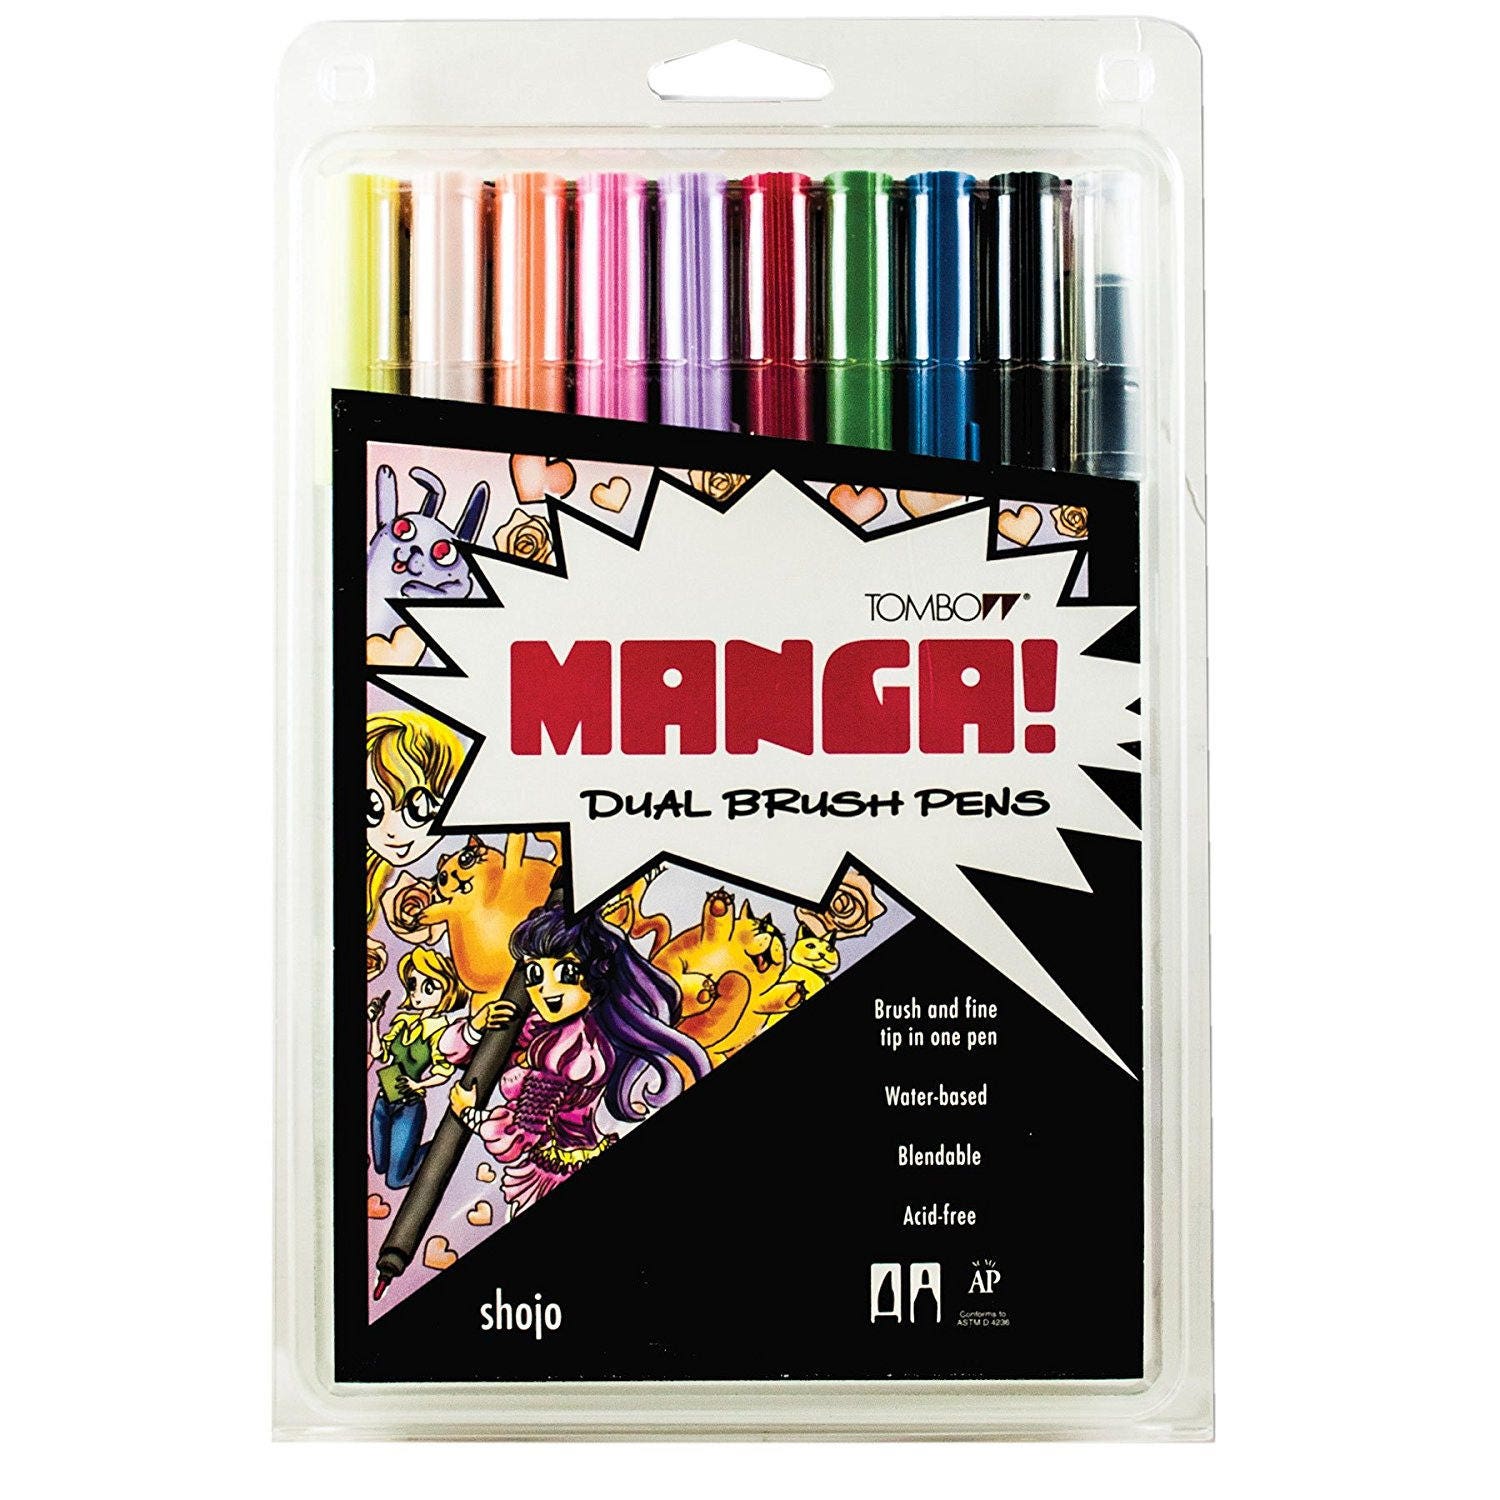 Tombow ABT Dual Brush Pen 10 set, Manga Shojo Colours